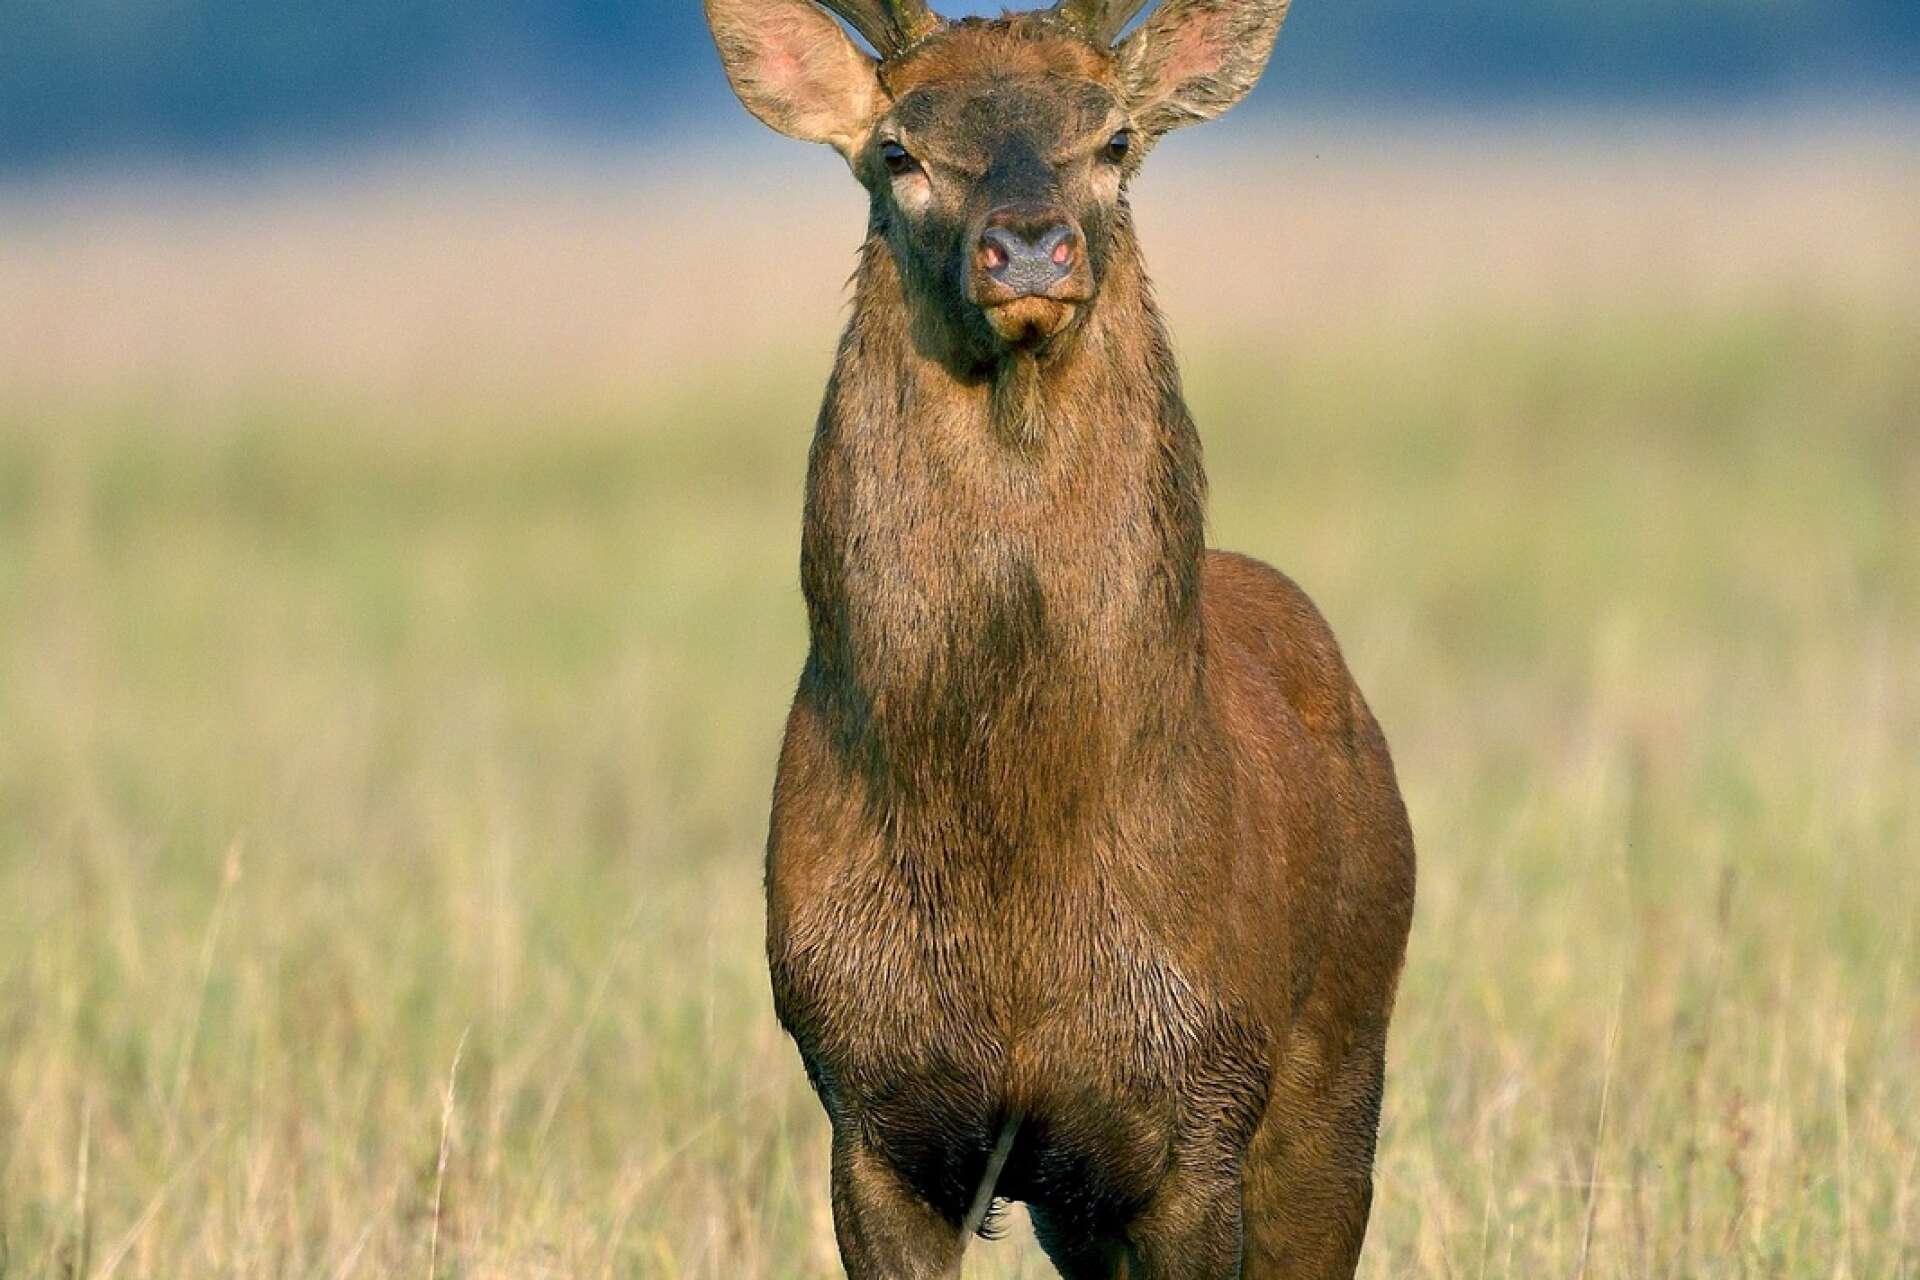 Den ståtliga kronhjorten är Sveriges näst största vilda hjortdjur, efter älgen. Kronhjortens spegel varierar mellan ljusröd till smutsvit. Foto: Torbjörn Skogedal